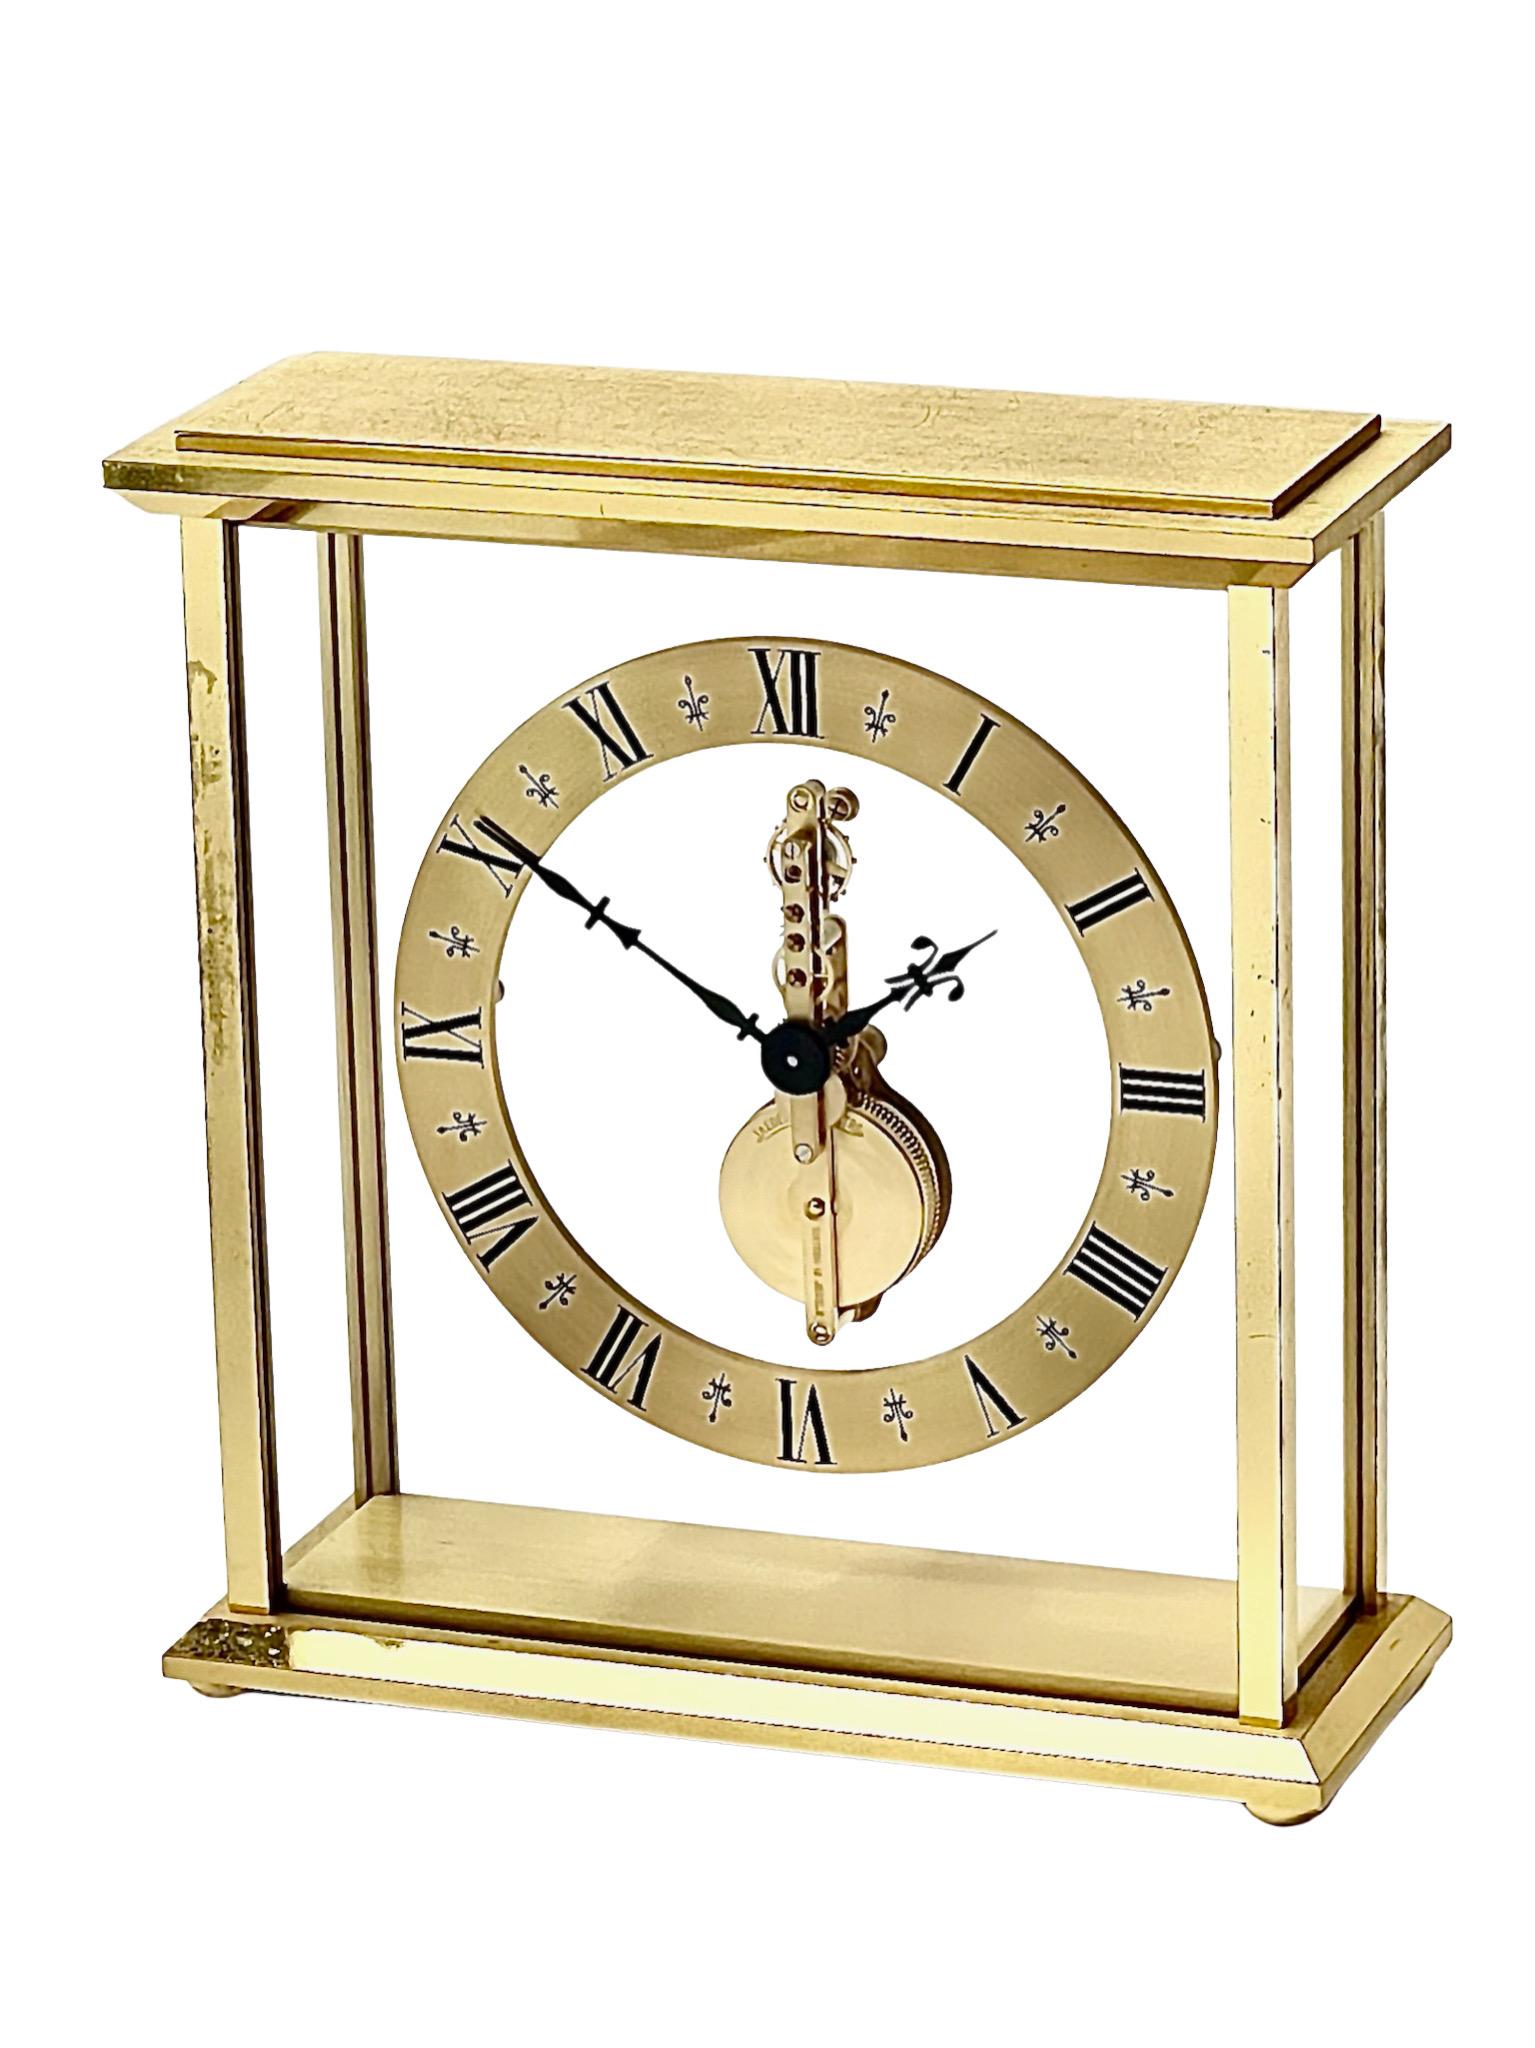 Eine schöne Kaminsimsuhr aus Messing und Glas von Jaeger-LeCoultre, mit einem schwebenden Baguette-Uhrwerk in einem rechteckigen Gehäuse aus Glas und poliertem Messing. Das vergoldete Messinggehäuse hat stilvoll abgeschrägte Kanten und die